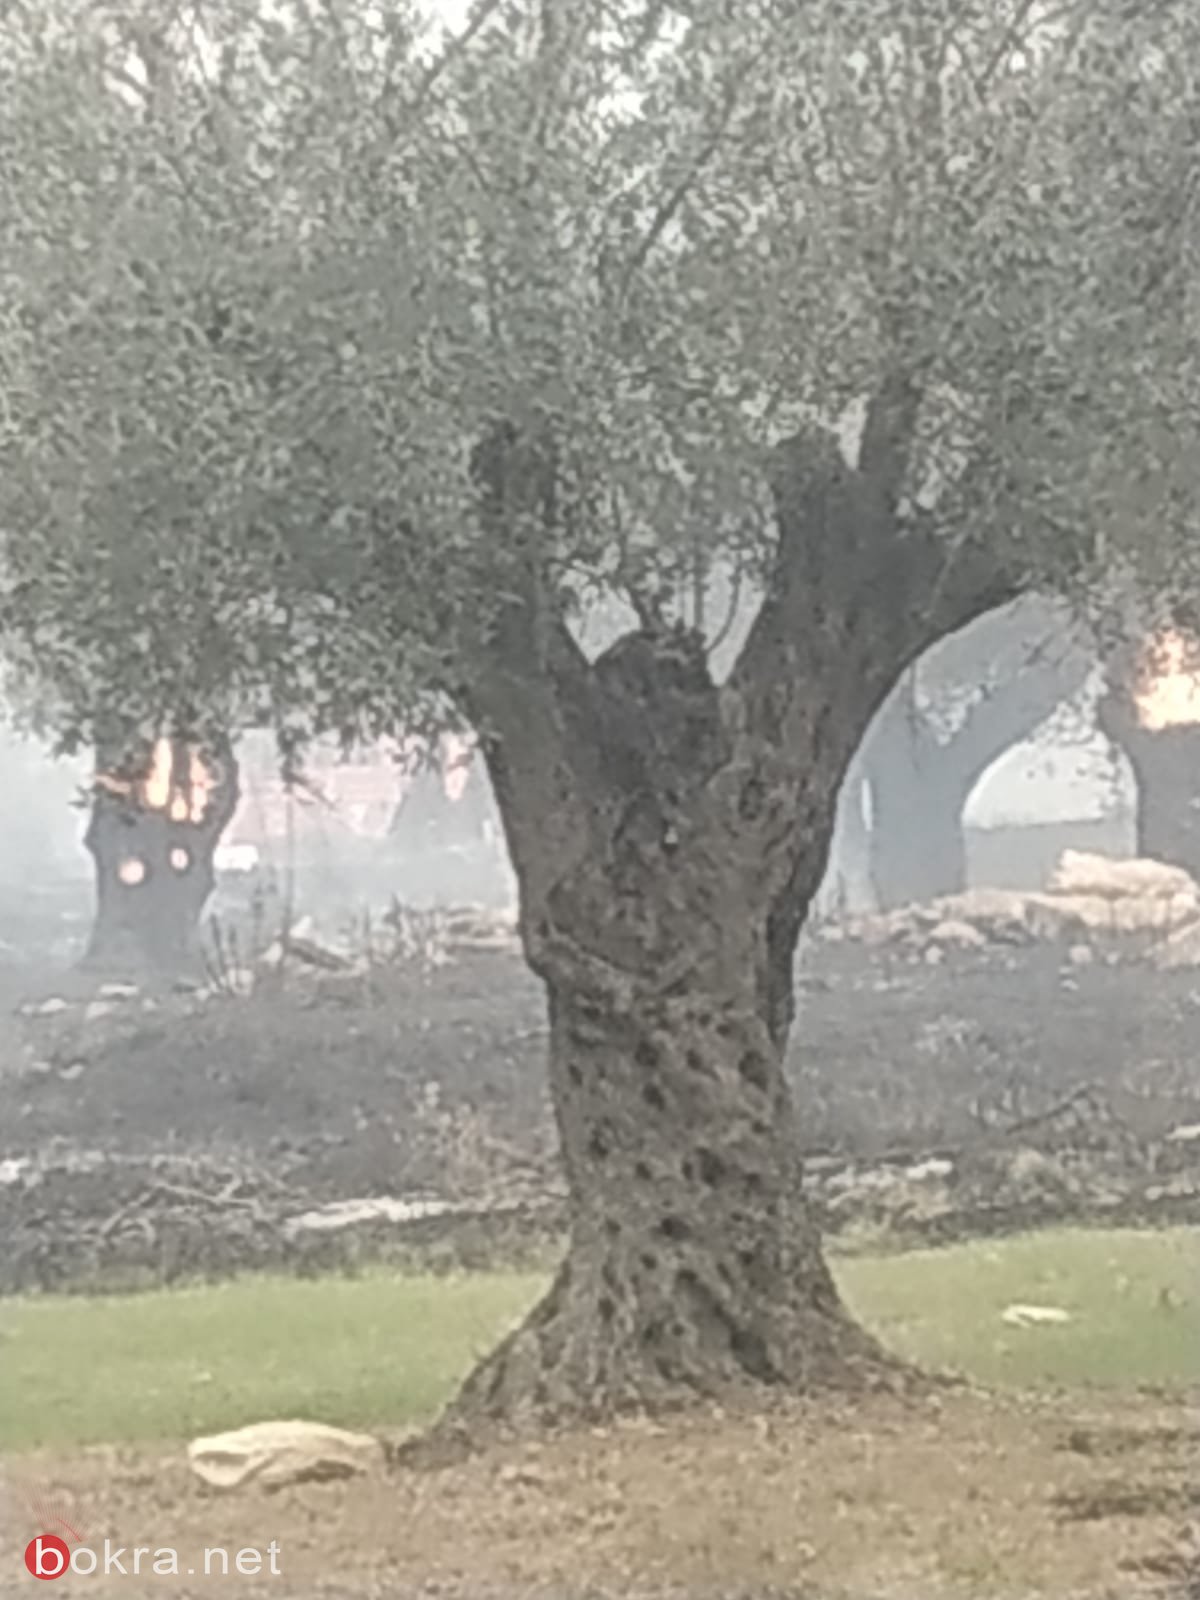 الحريق في ترشيحا- أندراوس: أضرار لكروم الزيتون والمصالح التجارية والأملاك!-18